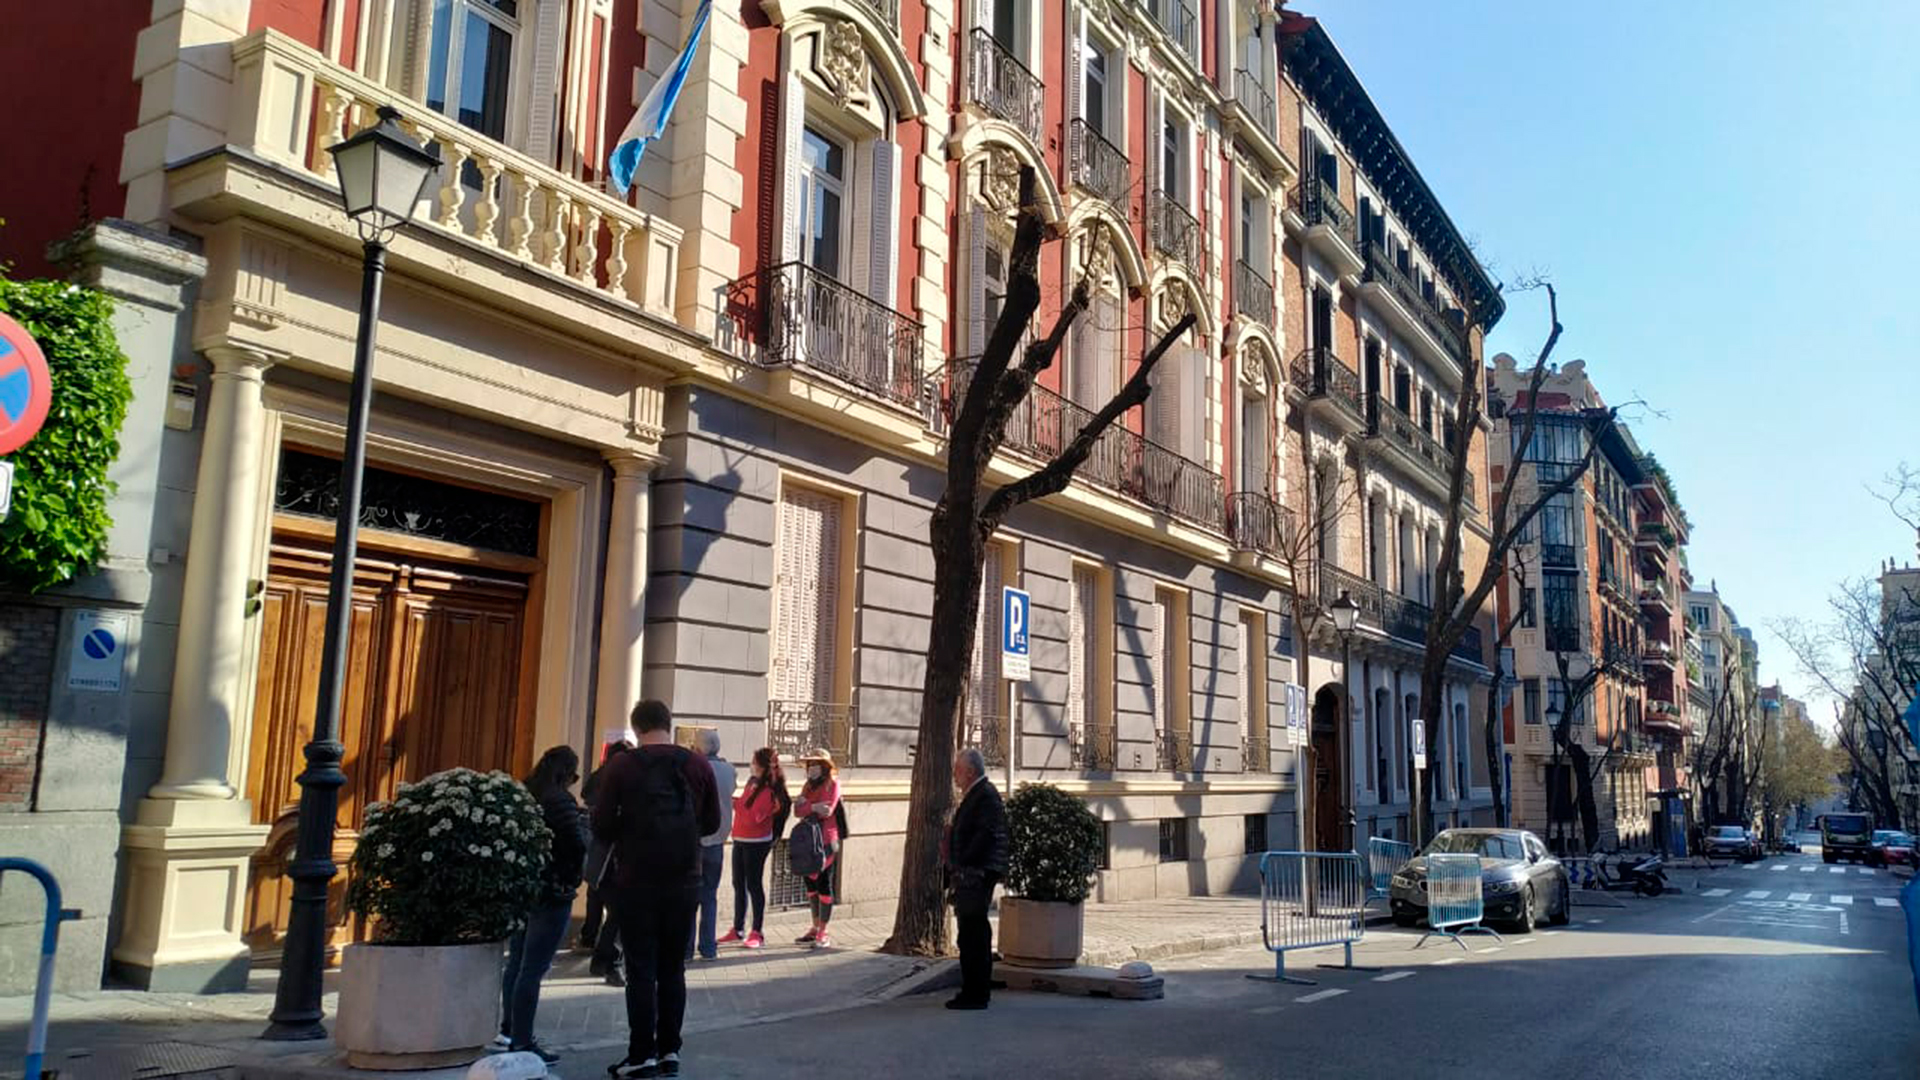 Consulado argentino en España, principal destino de los emigrantes argentinos (Joaquín Pedroso)